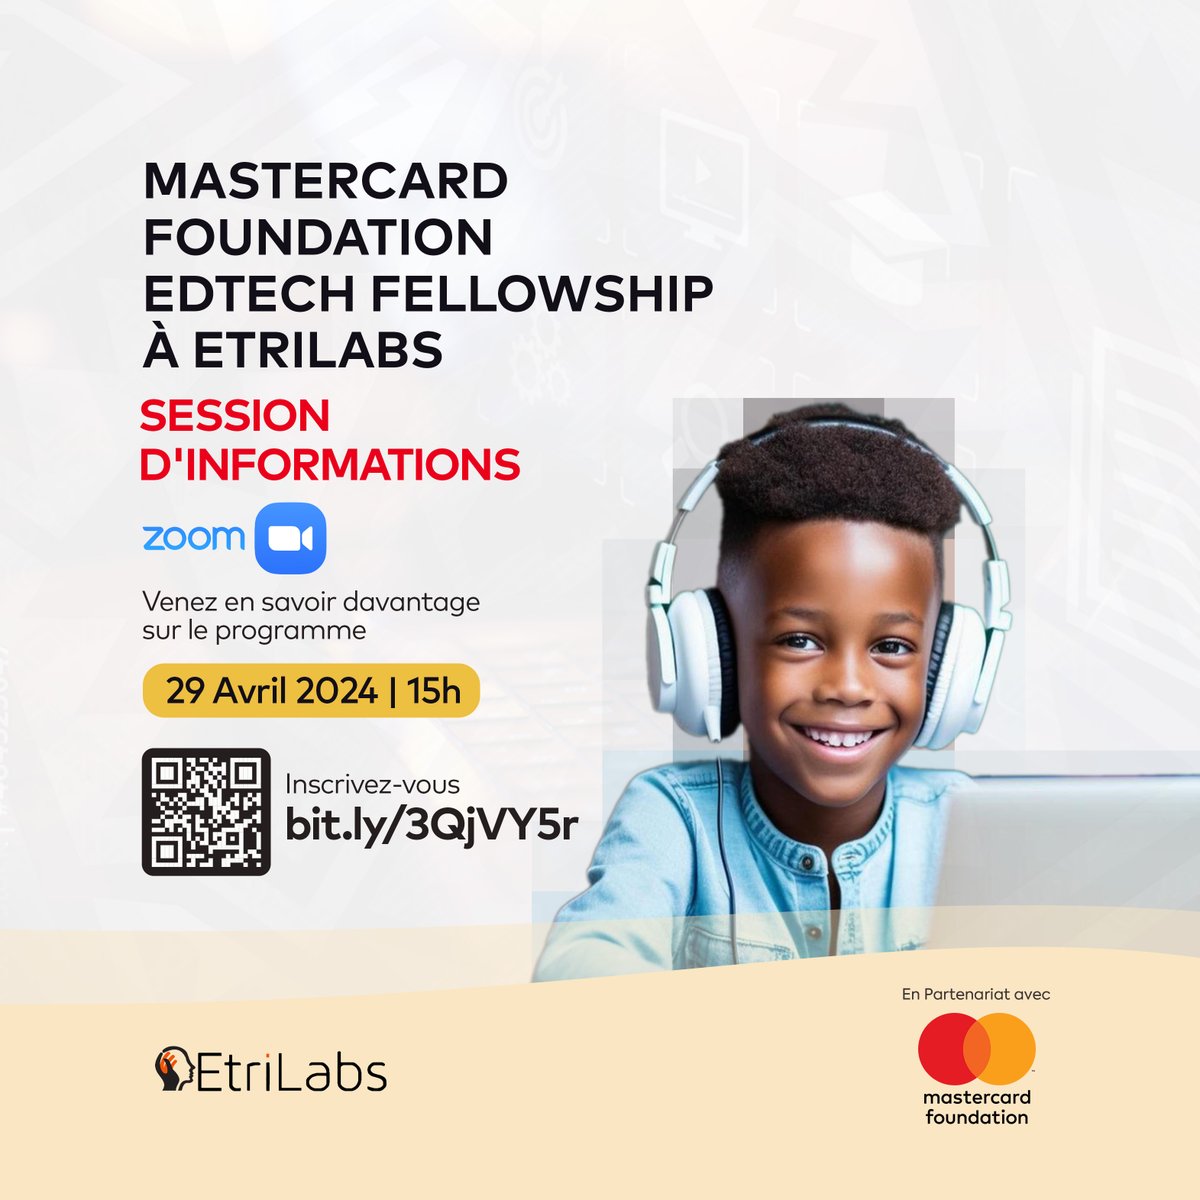 𝗡𝗲 𝗺𝗮𝗻𝗾𝘂𝗲𝘇 𝗽𝗮𝘀 𝗻𝗼𝘁𝗿𝗲 𝘀𝗲𝘀𝘀𝗶𝗼𝗻 𝗱'𝗶𝗻𝗳𝗼𝗿𝗺𝗮𝘁𝗶𝗼𝗻𝘀 𝗲𝗻 𝗹𝗶𝗴𝗻𝗲 𝗰𝗲 𝟮𝟵 𝗮𝘃𝗿𝗶𝗹 à 𝟭𝟱𝗵 𝗚𝗠𝗧 !

Profitez de cette opportunité pour découvrir les avantages offerts par le Programme Mastercard Foundation EdTech Fellowship à EtriLabs,